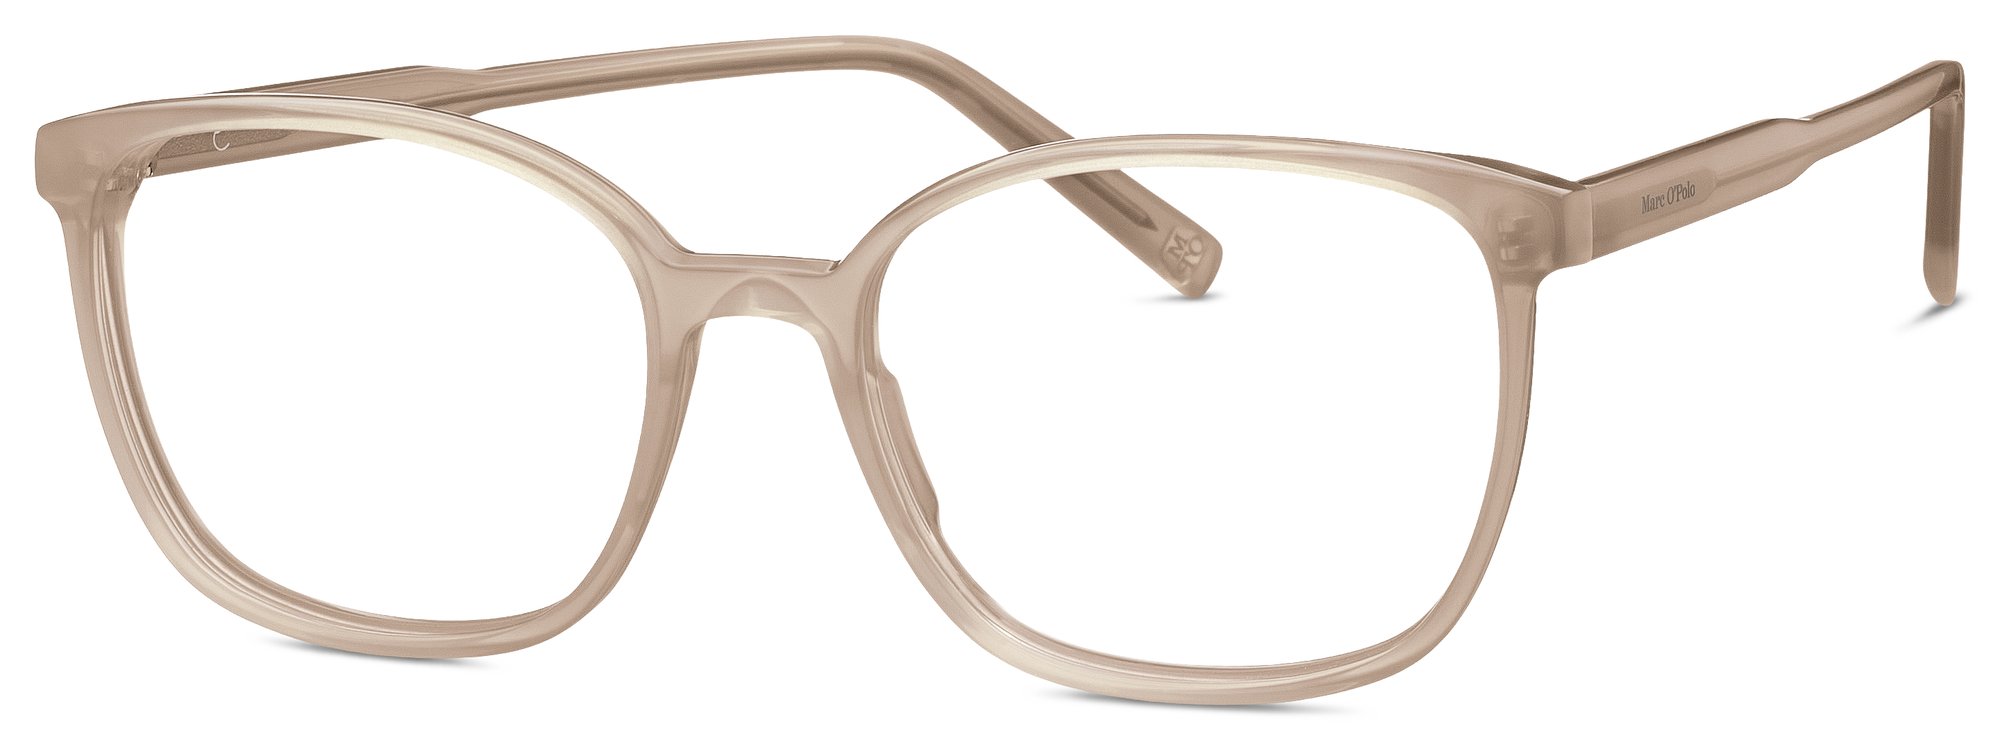 Das Bild zeigt die Korrektionsbrille 503207 60 von der Marke Marc O‘Polo in nude.